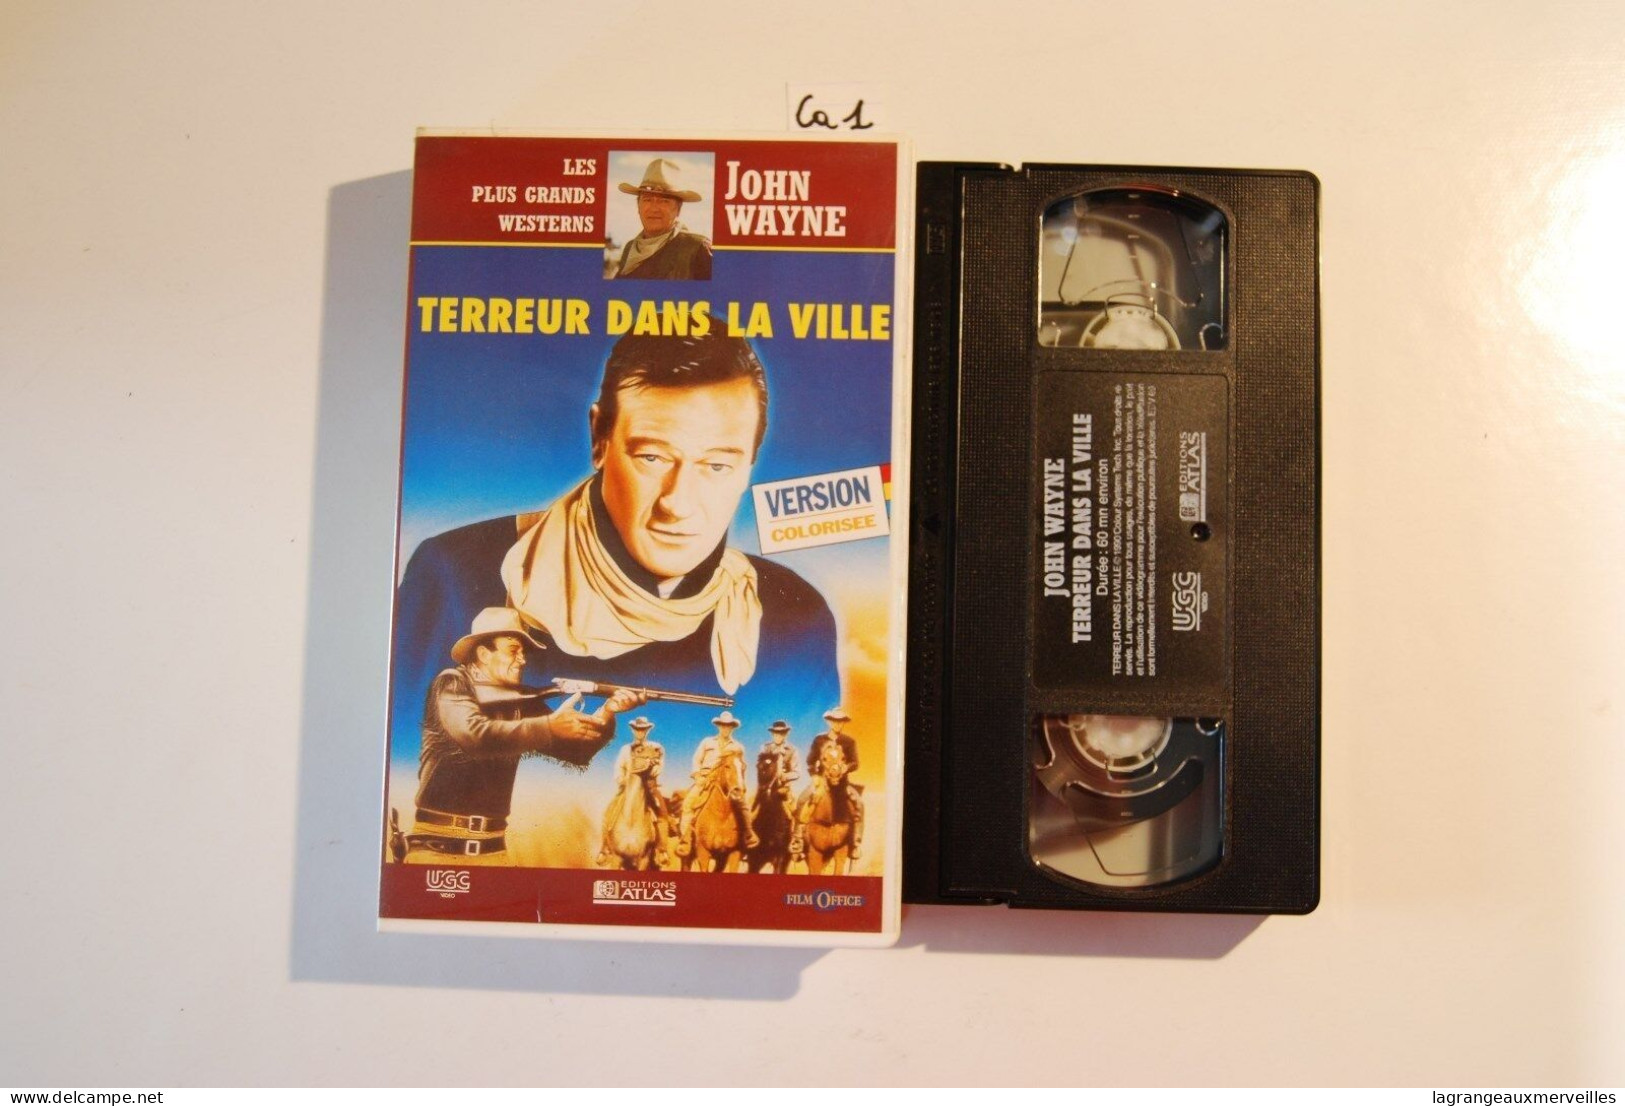 CA1 Cassette Vidéo VHS JOHN WAYNE TERREUR DANS LA VILLE - Western / Cowboy